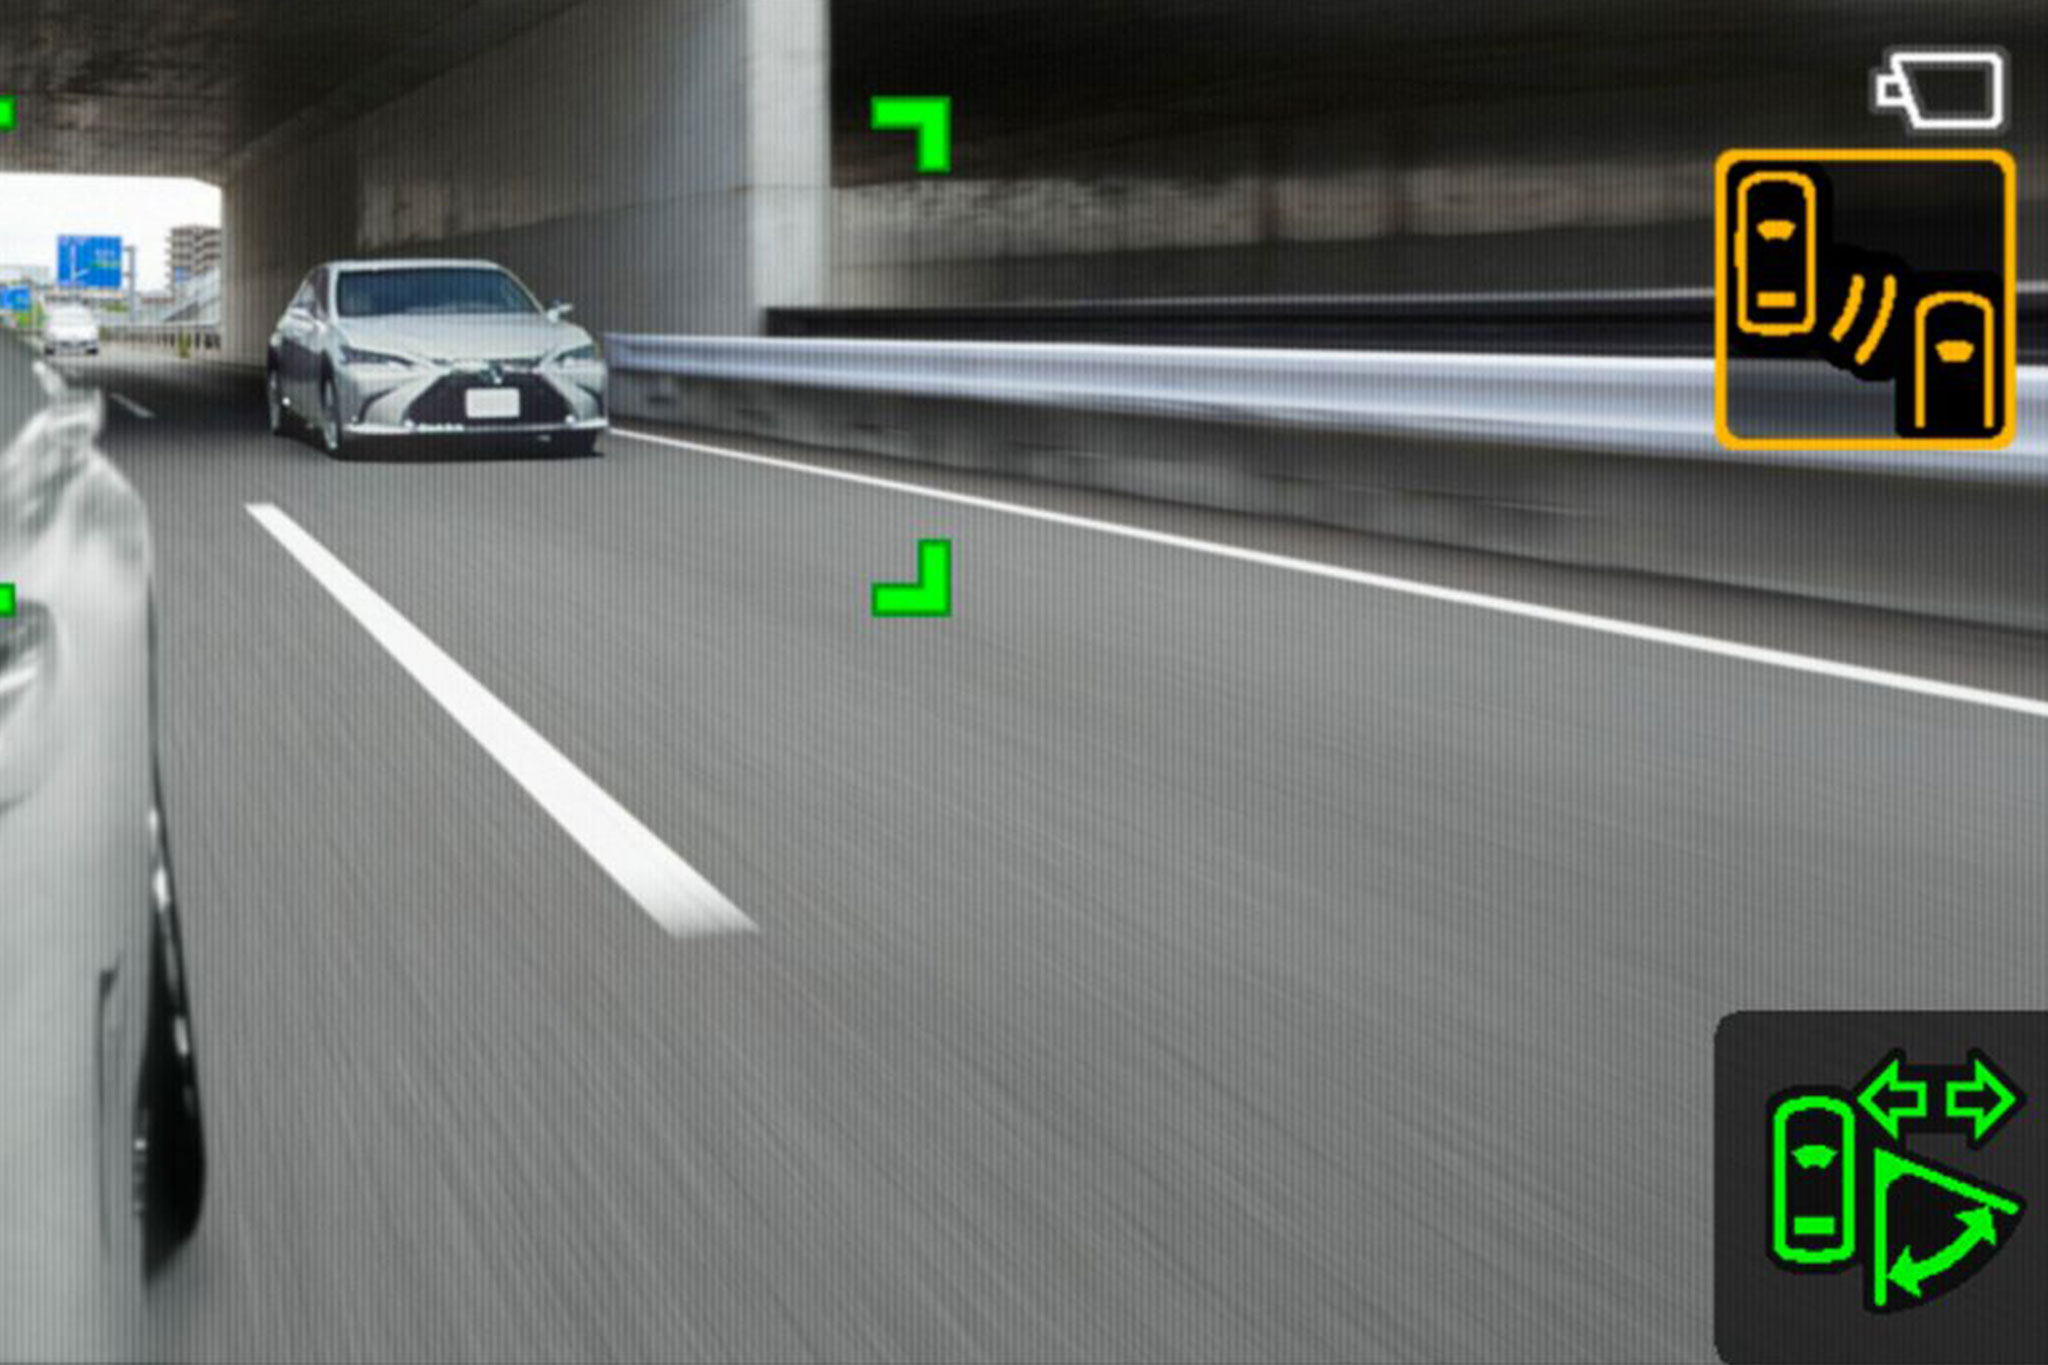 Lexus-Digital-Mirror_1.jpg